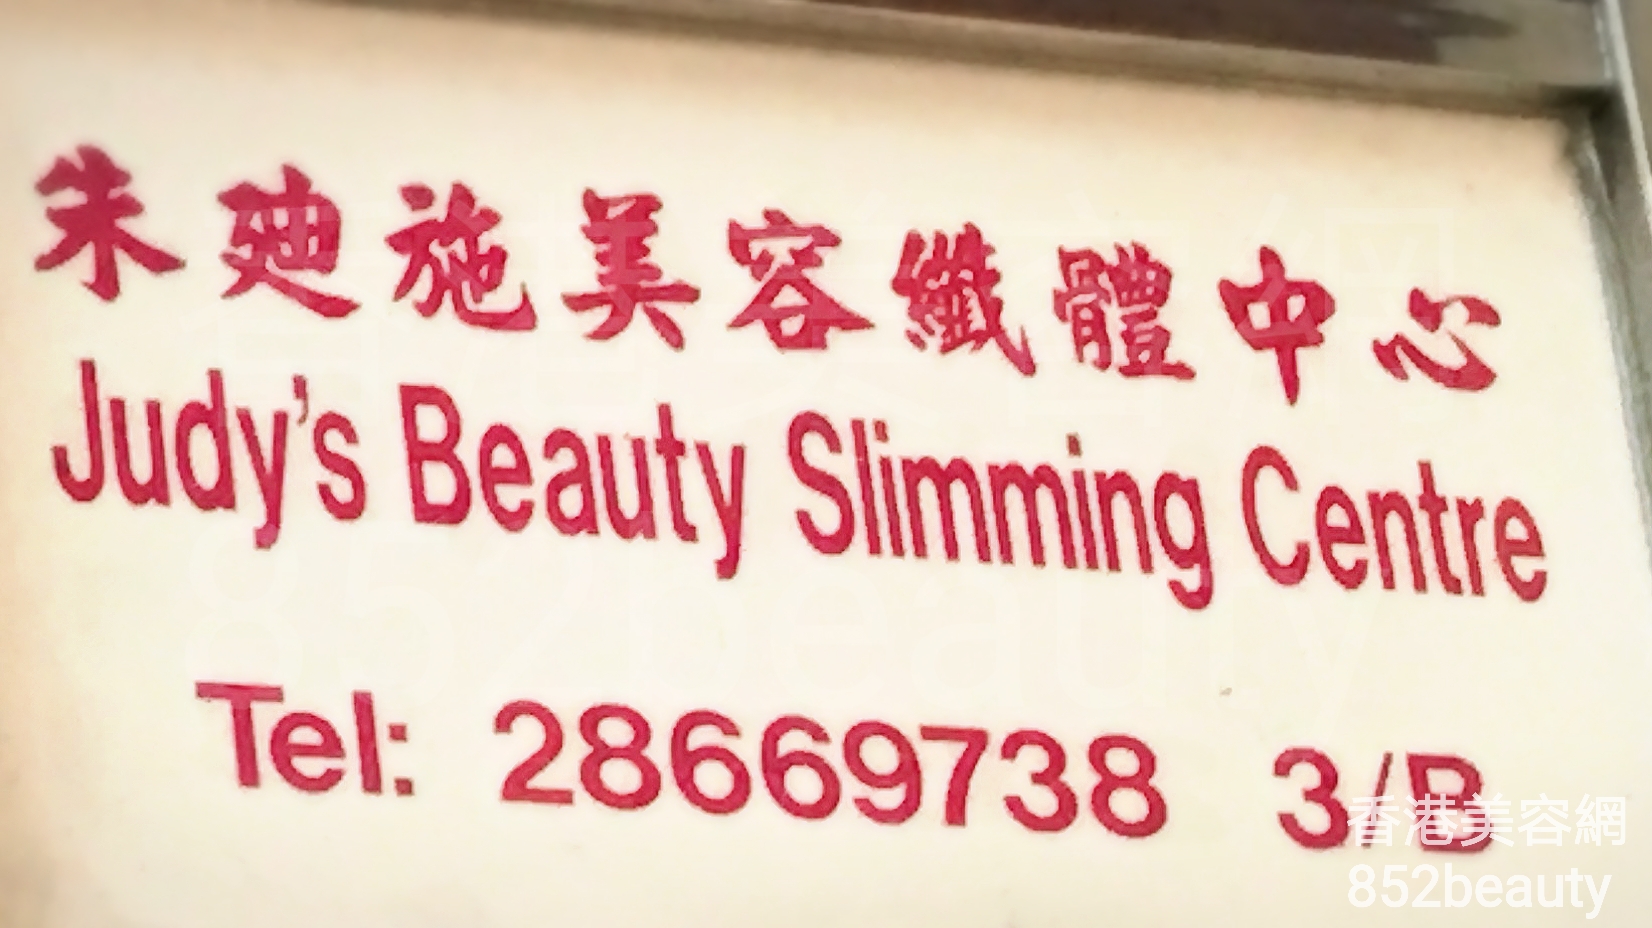 纤体瘦身: 朱廸施美容纖體中心 Judy\'s Beauty Slimming Centre